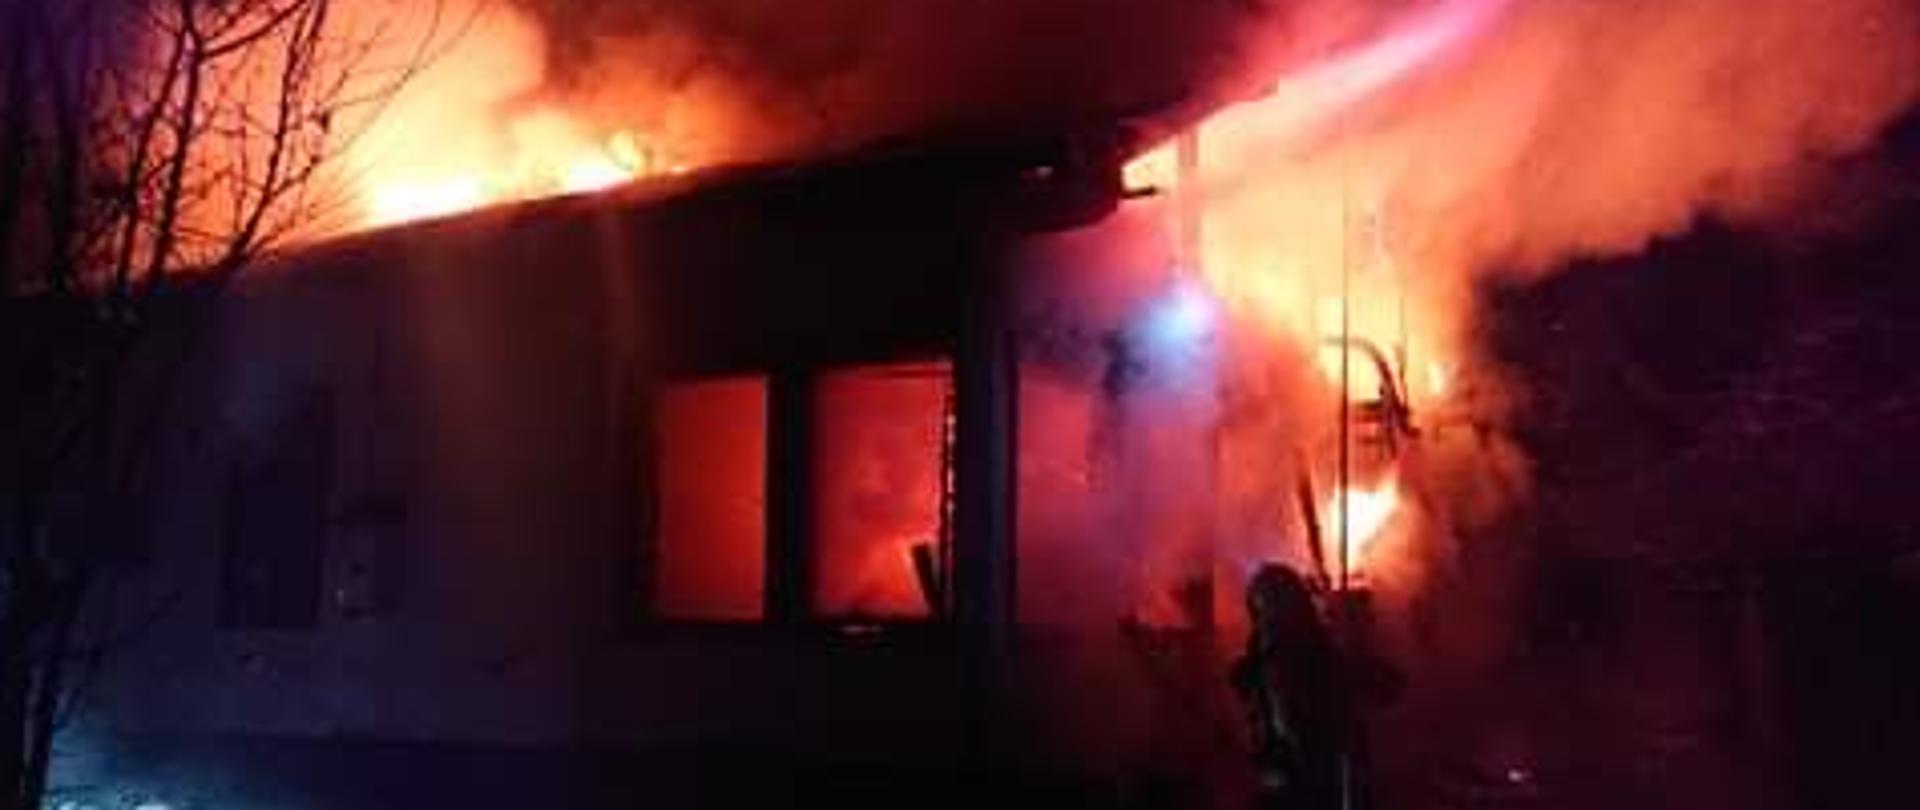 Na zdjęciu w porze nocnej widoczne samochody pożarnicze i strażacy przemieszczający się do pożaru budynku mieszkalnego. Warunki zimowe, śnieg, strażacy w trakcie rozwijania linii gaśniczych.